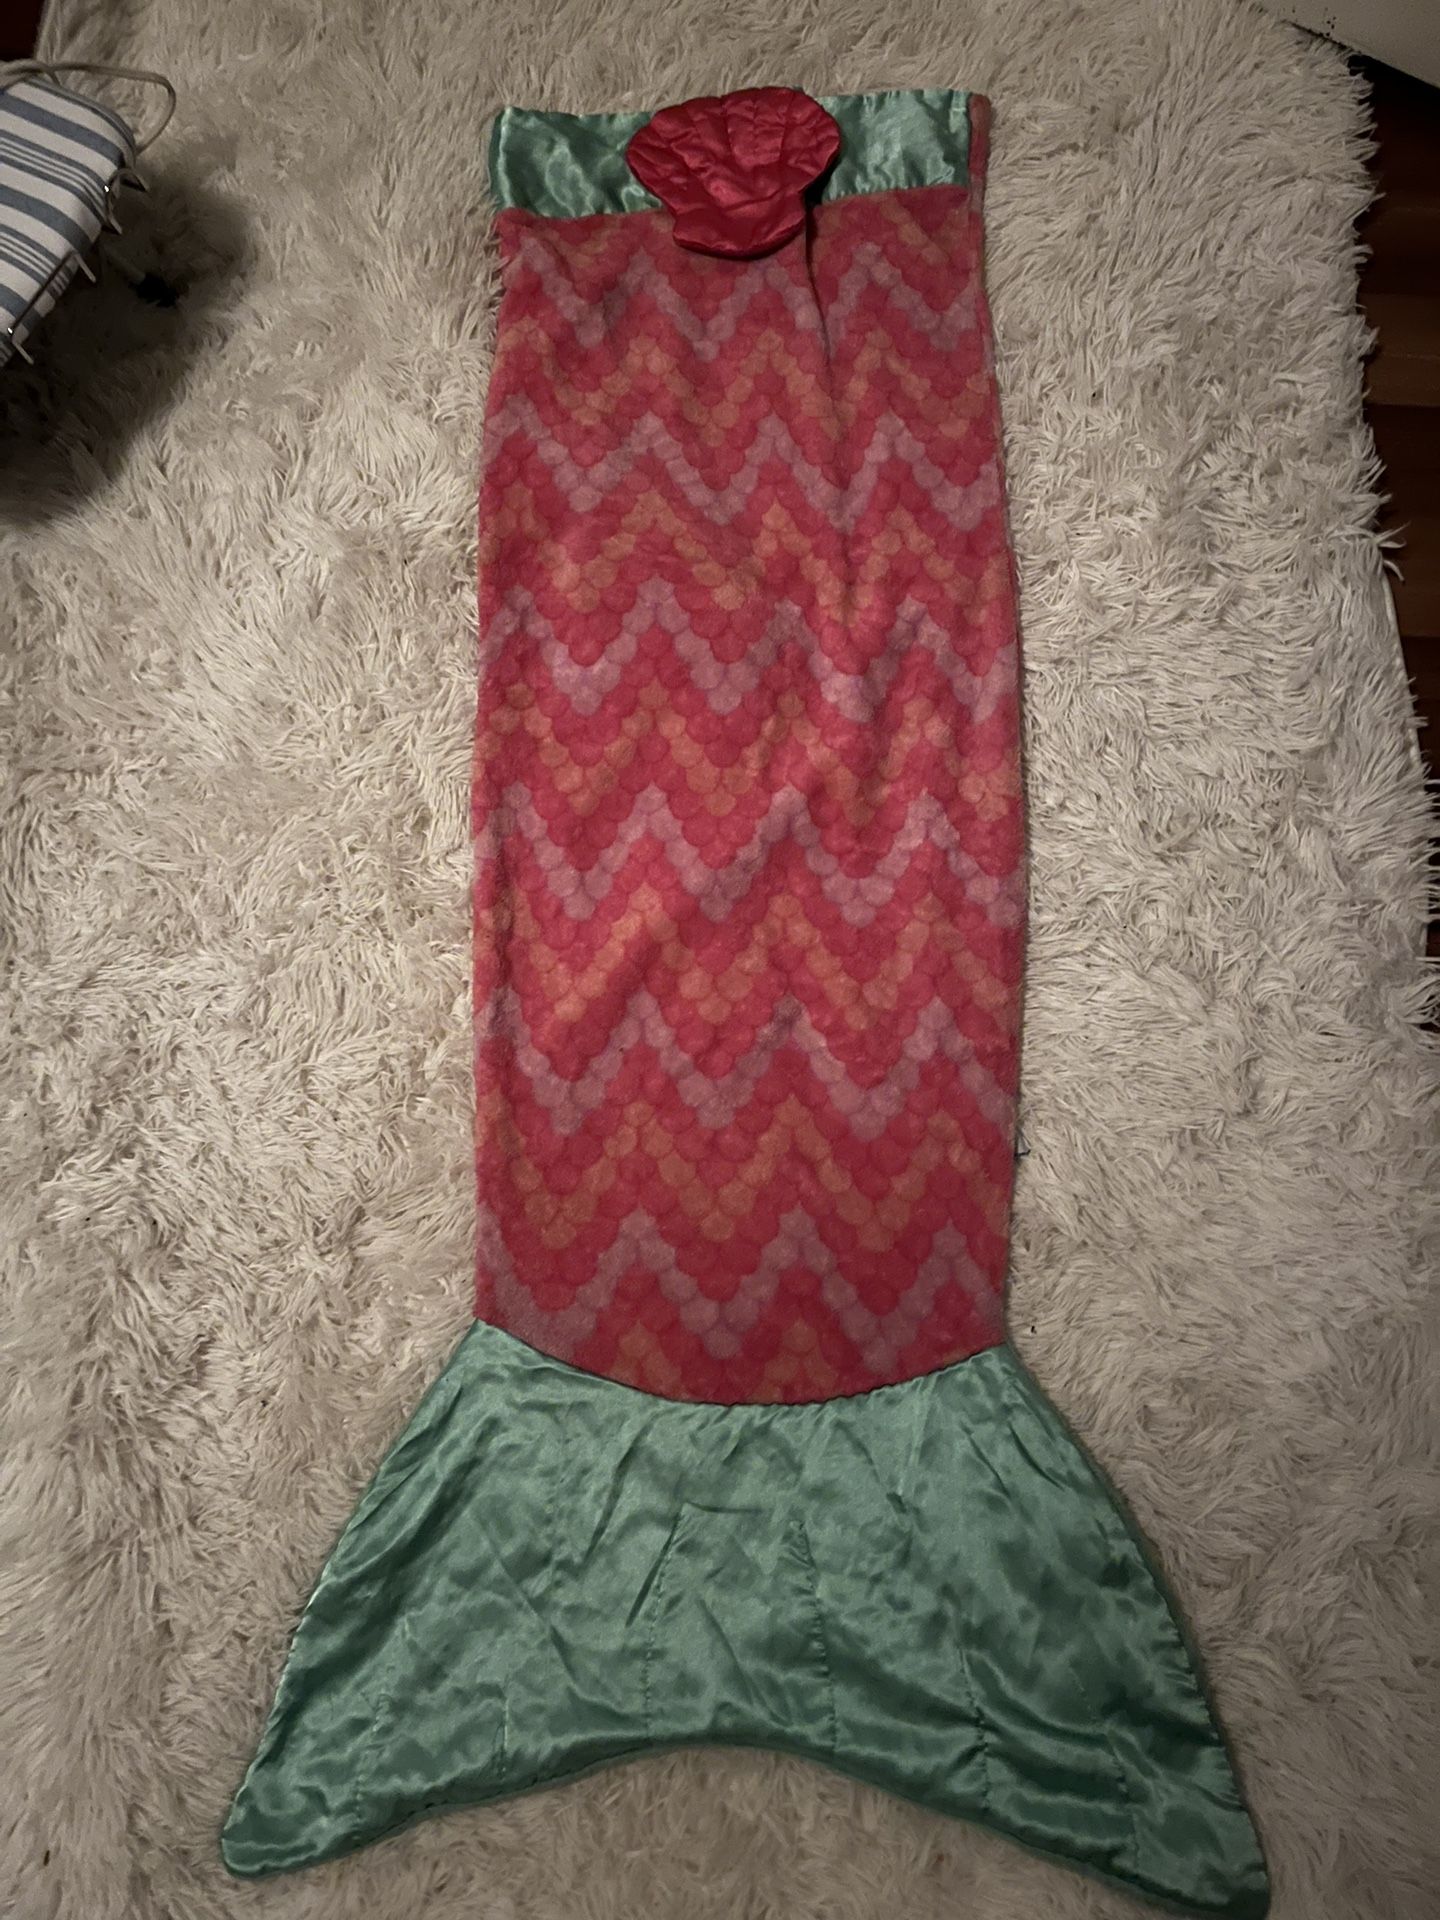 Snuggie Kids Mermaid Tail Blanket